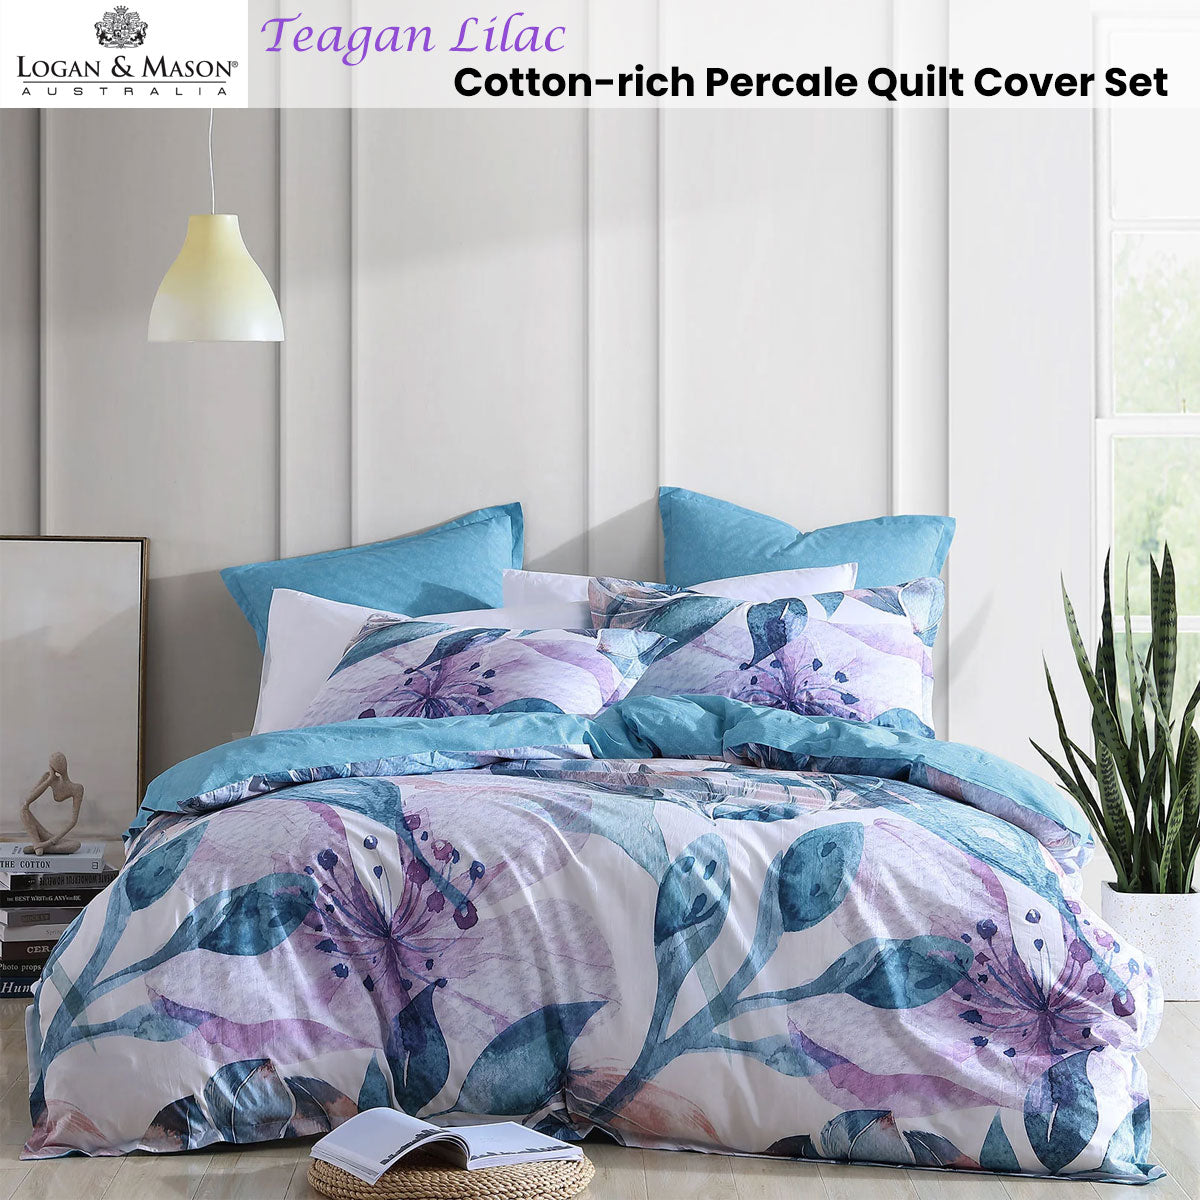 Logan and Mason Teagan Lilac Cotton-Rich Percale Print Super King Quilt Cover Set